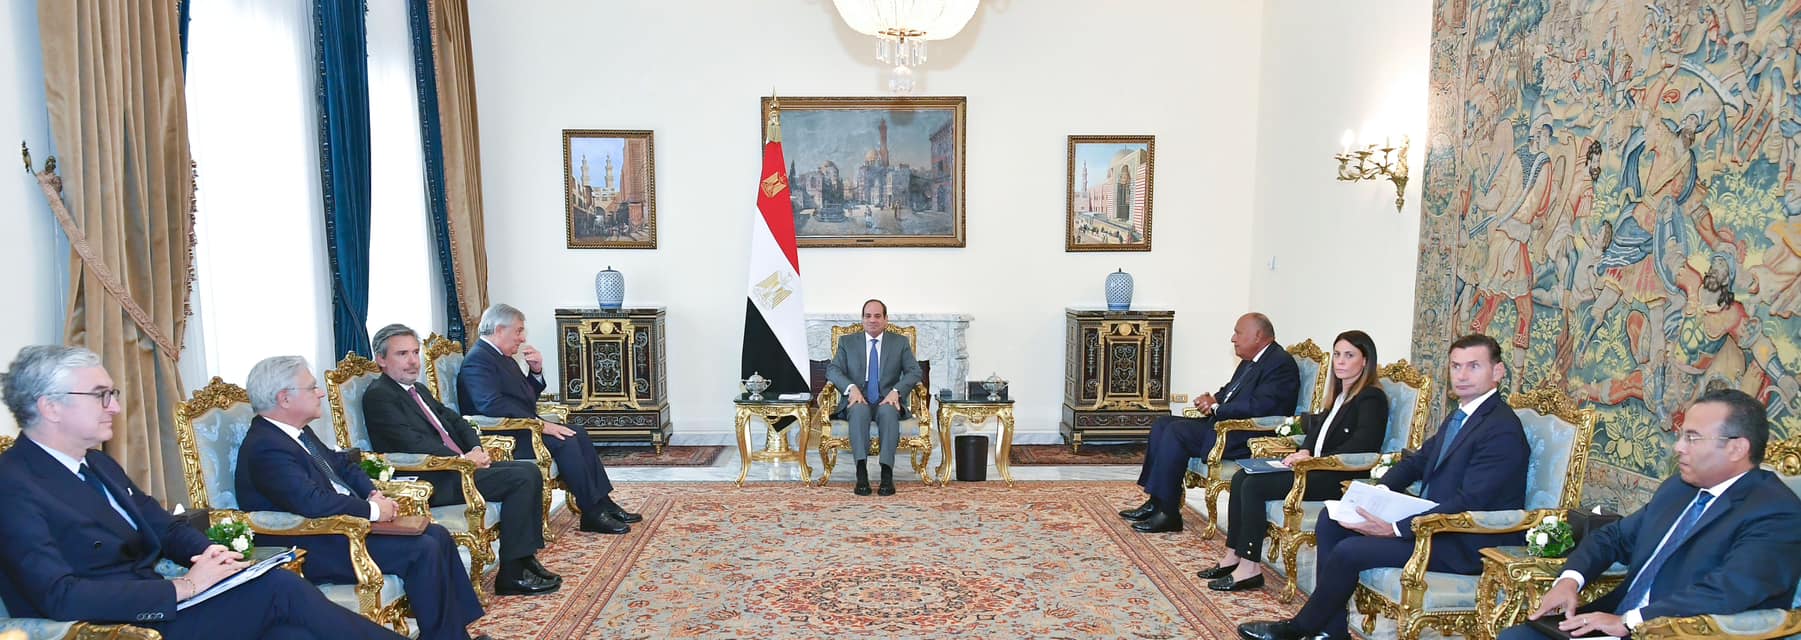 الرئيس لوفد إيطالي: مصر تكثف اتصالاتها لاحتواء التصعيد الفلسطيني الإسرائيلي